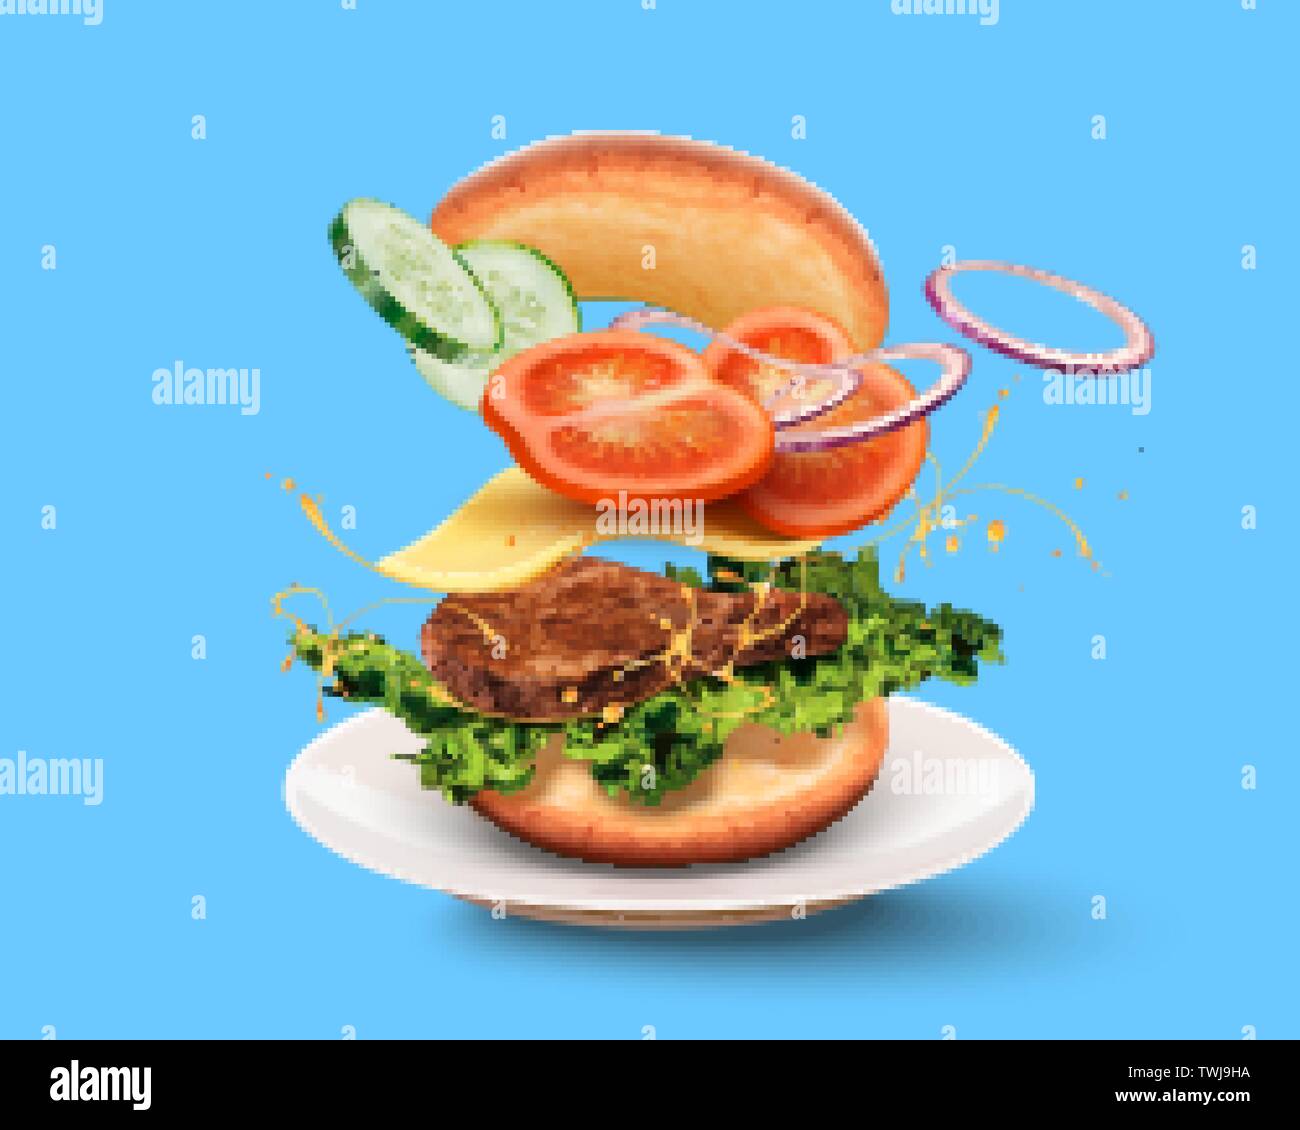 Délicieux hamburger avec ingyellowients voler dans les airs sur fond bleu en 3d illustration Illustration de Vecteur